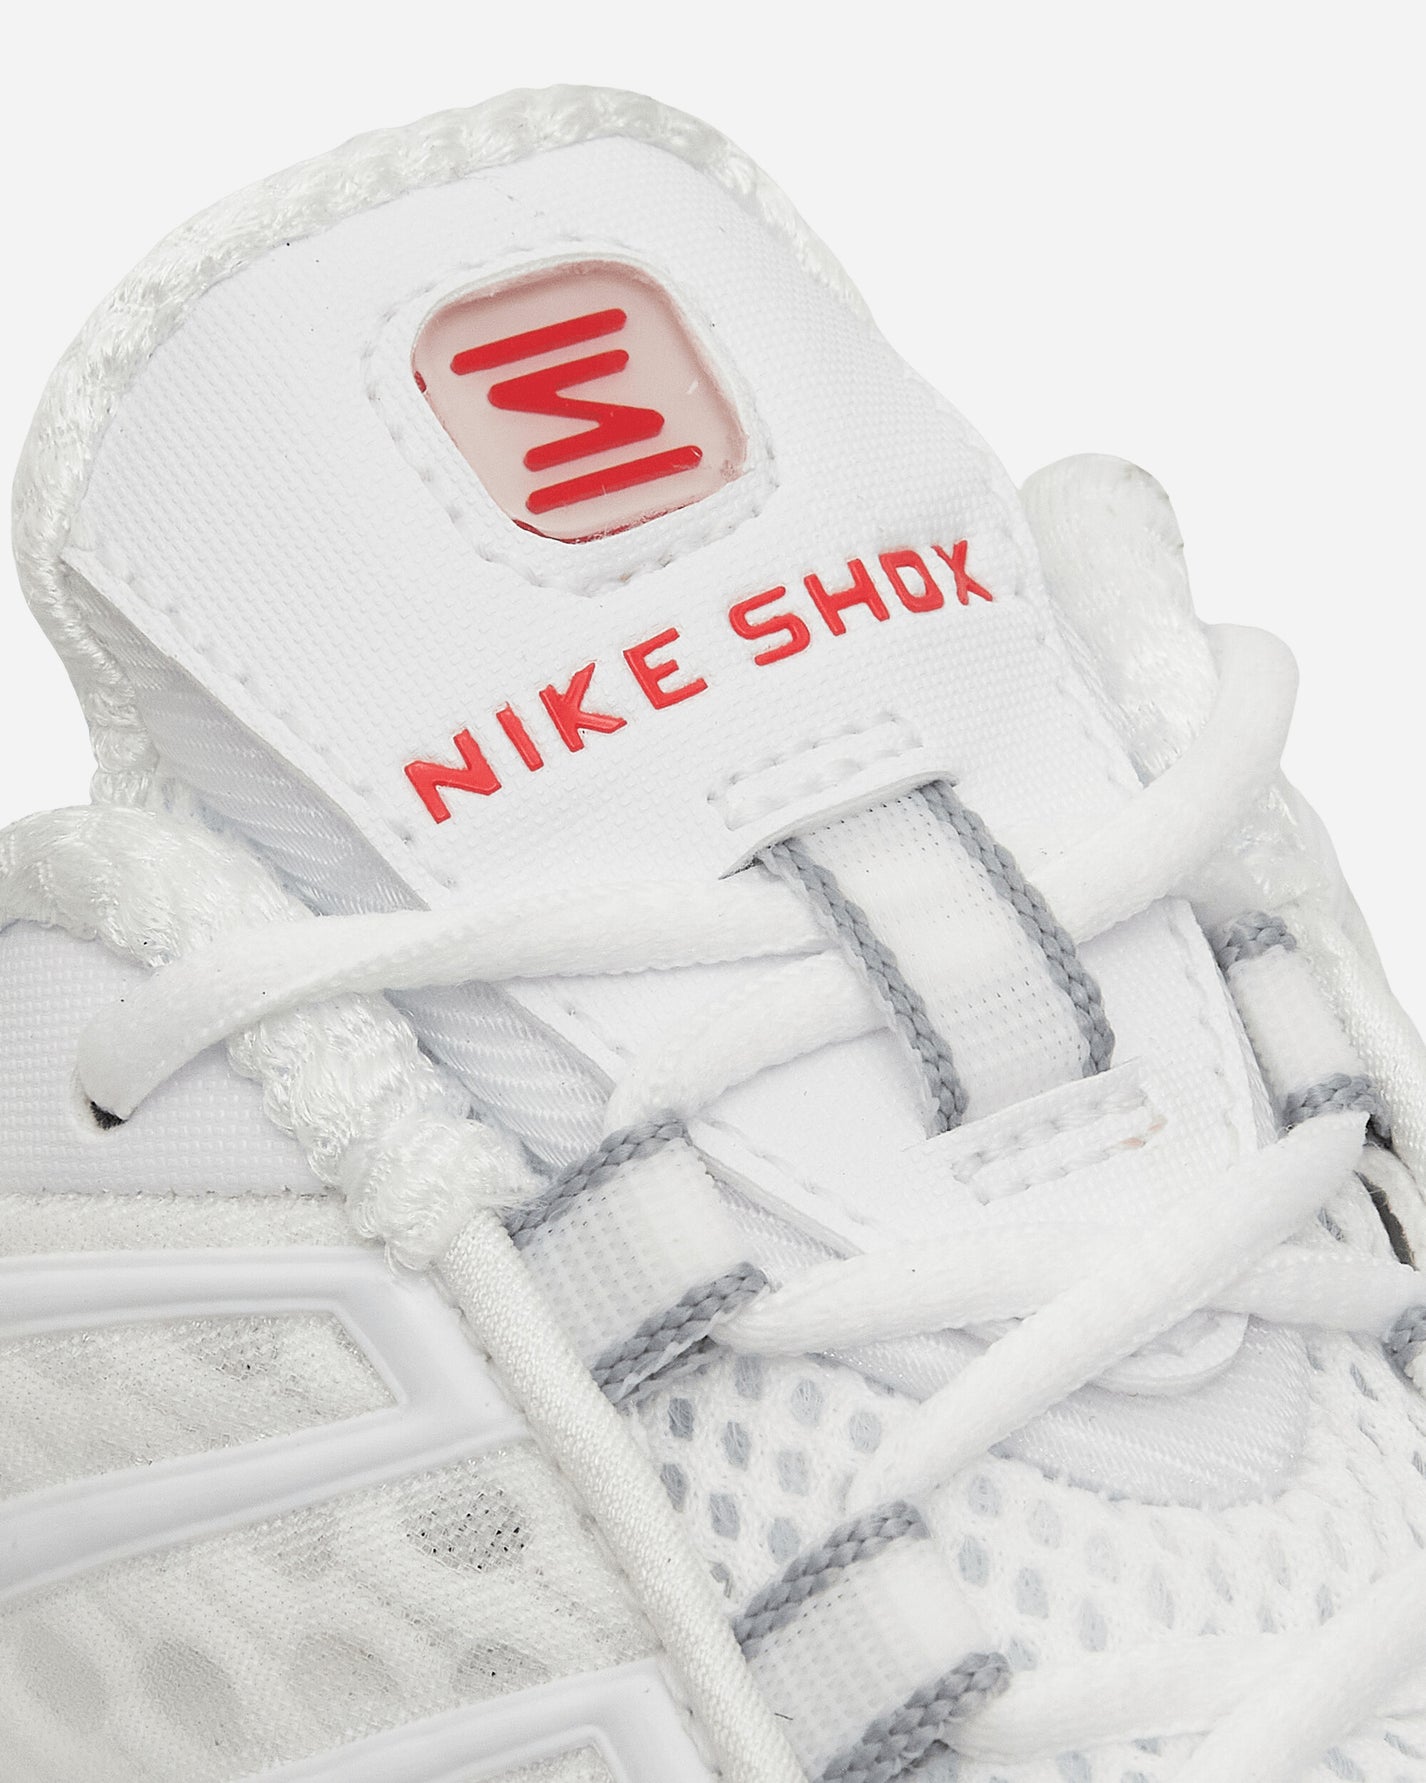 Nike Wmns W Nike Shox Tl White/White Sneakers Low AR3566W-100